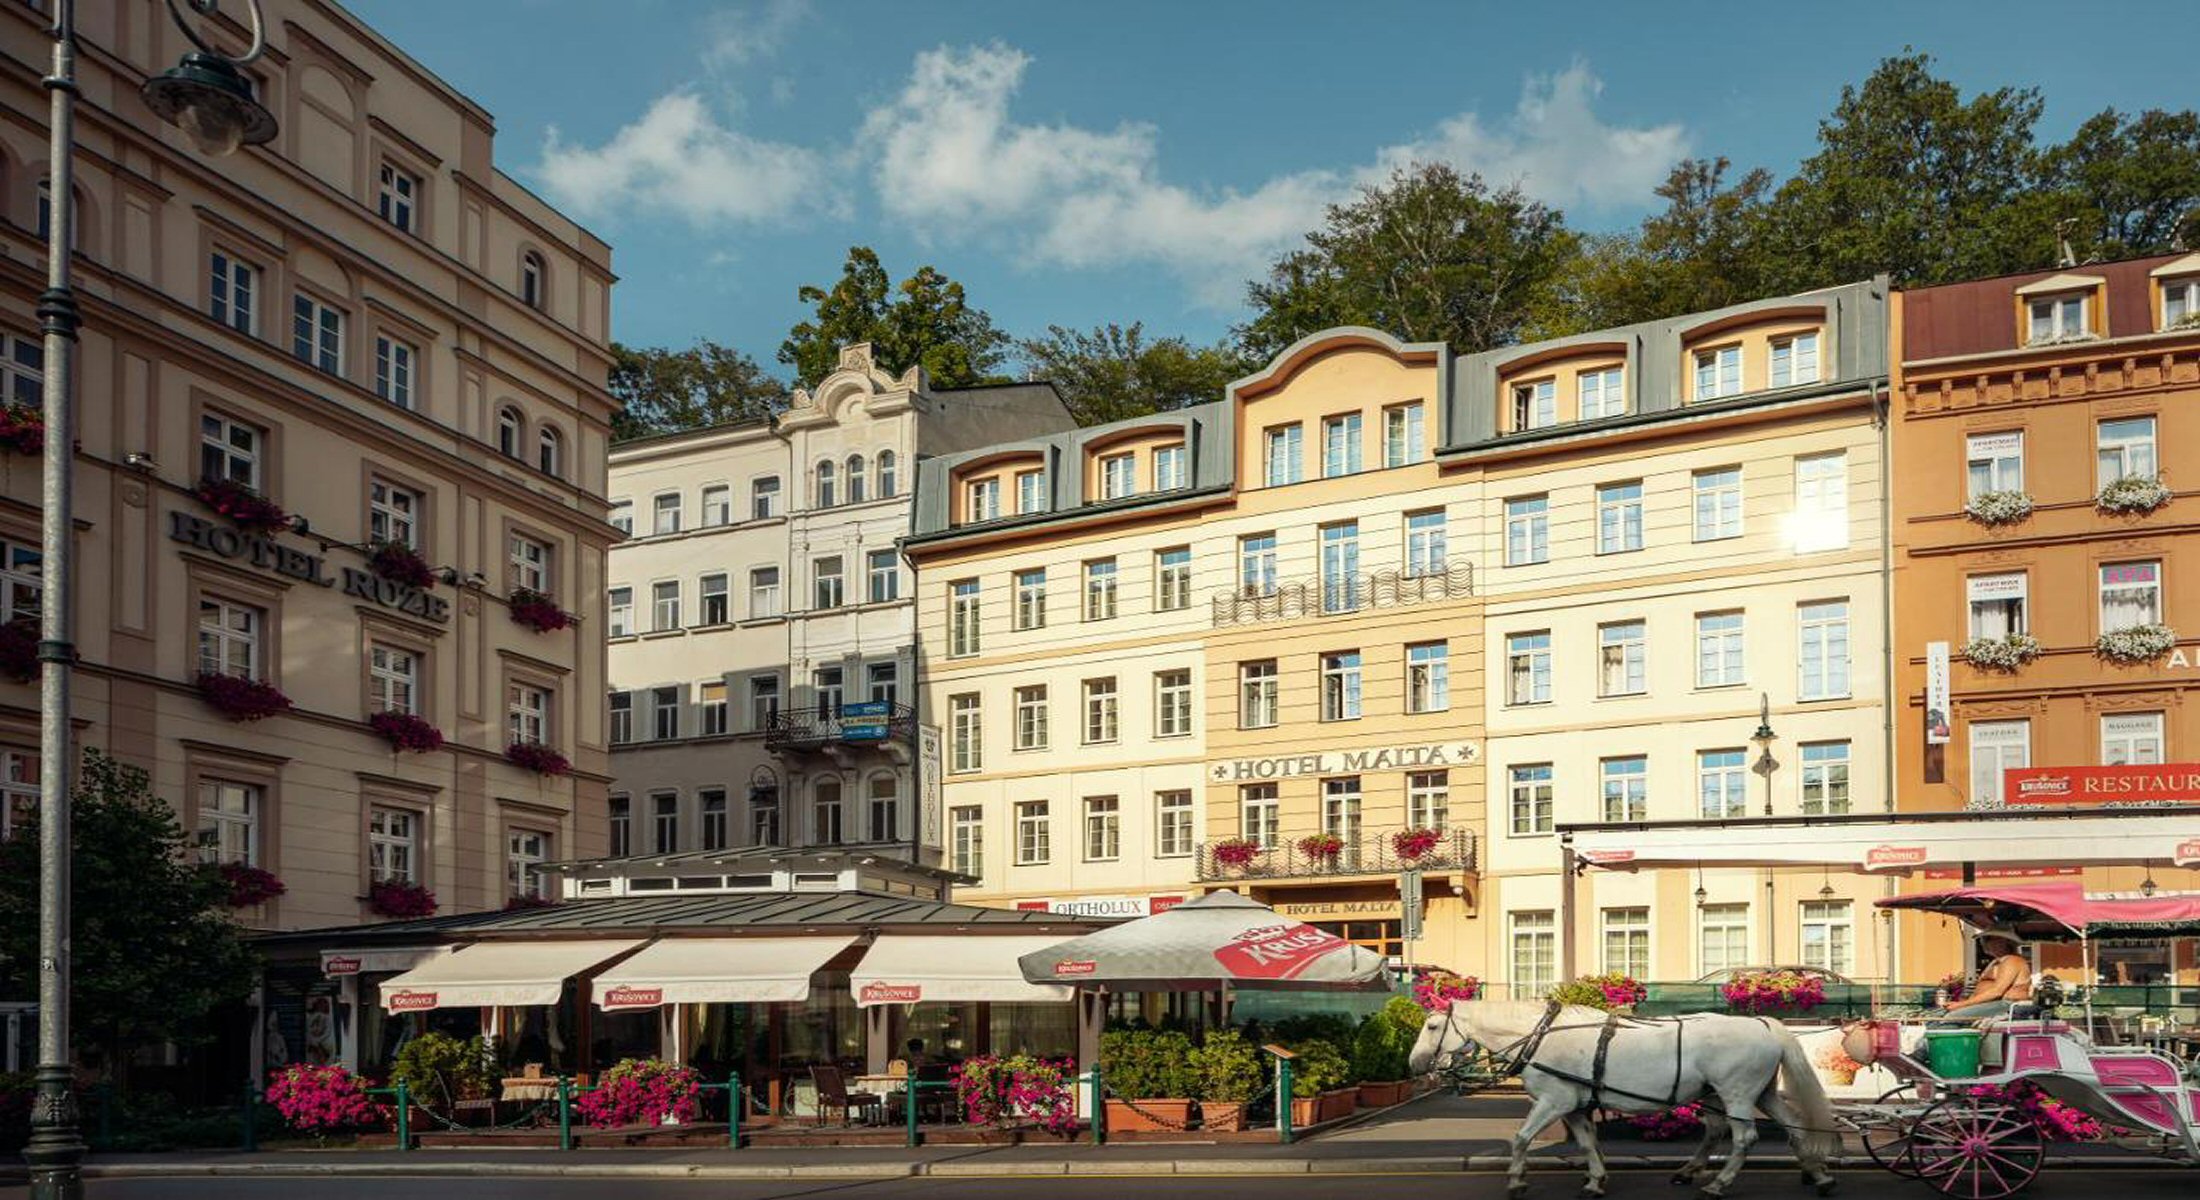 Hotelu Malta Karlovy Vary 1